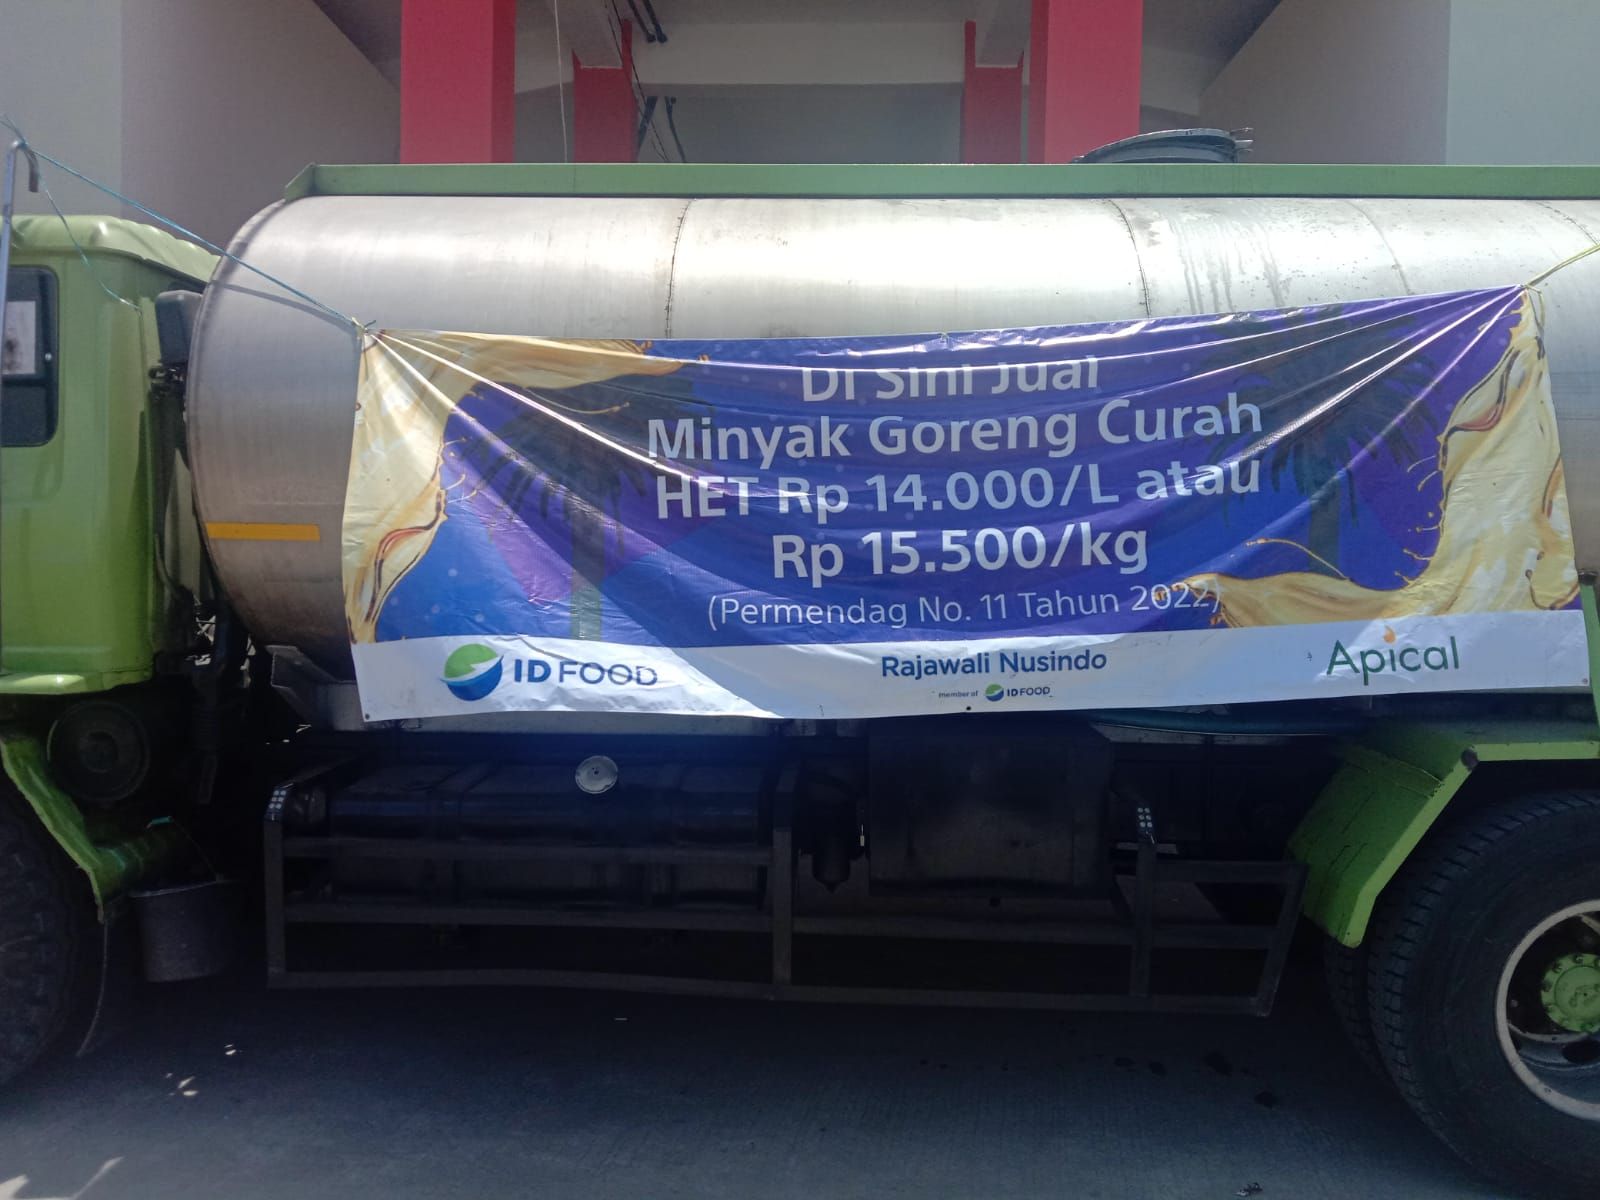 Distributor minyak goreng curah di Pasar Sehat Soreang, Kabupaten Bandung pada Kamis, 24 Maret 2022.